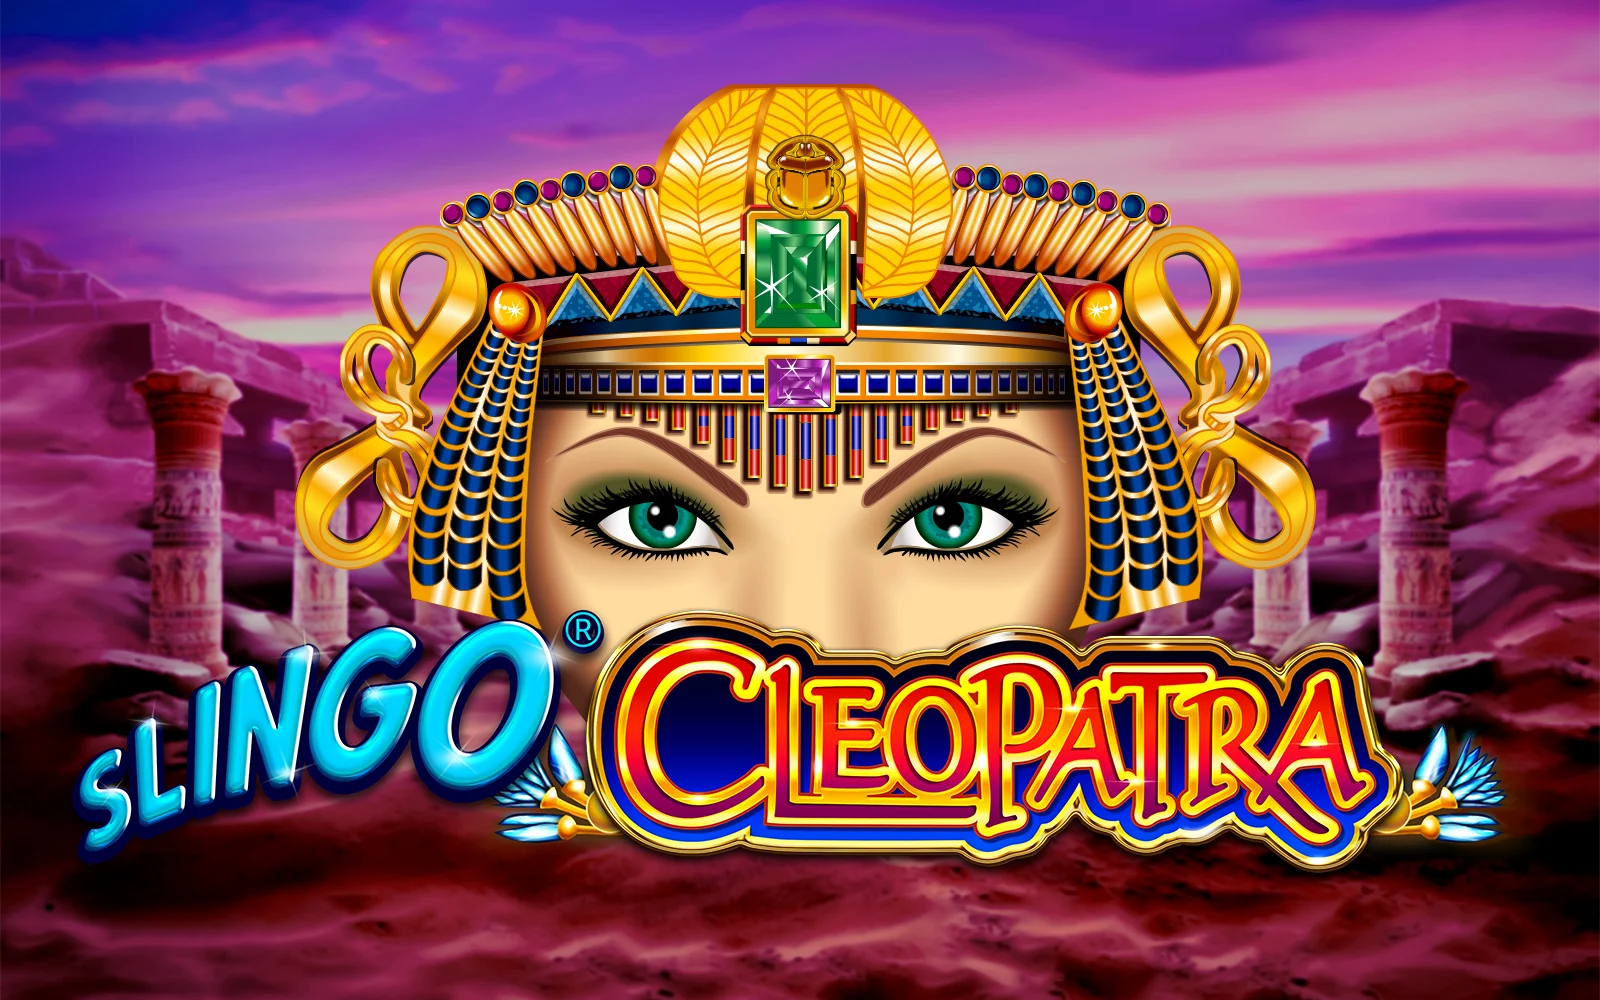 Speel Slingo Cleopatra op Starcasino.be online casino